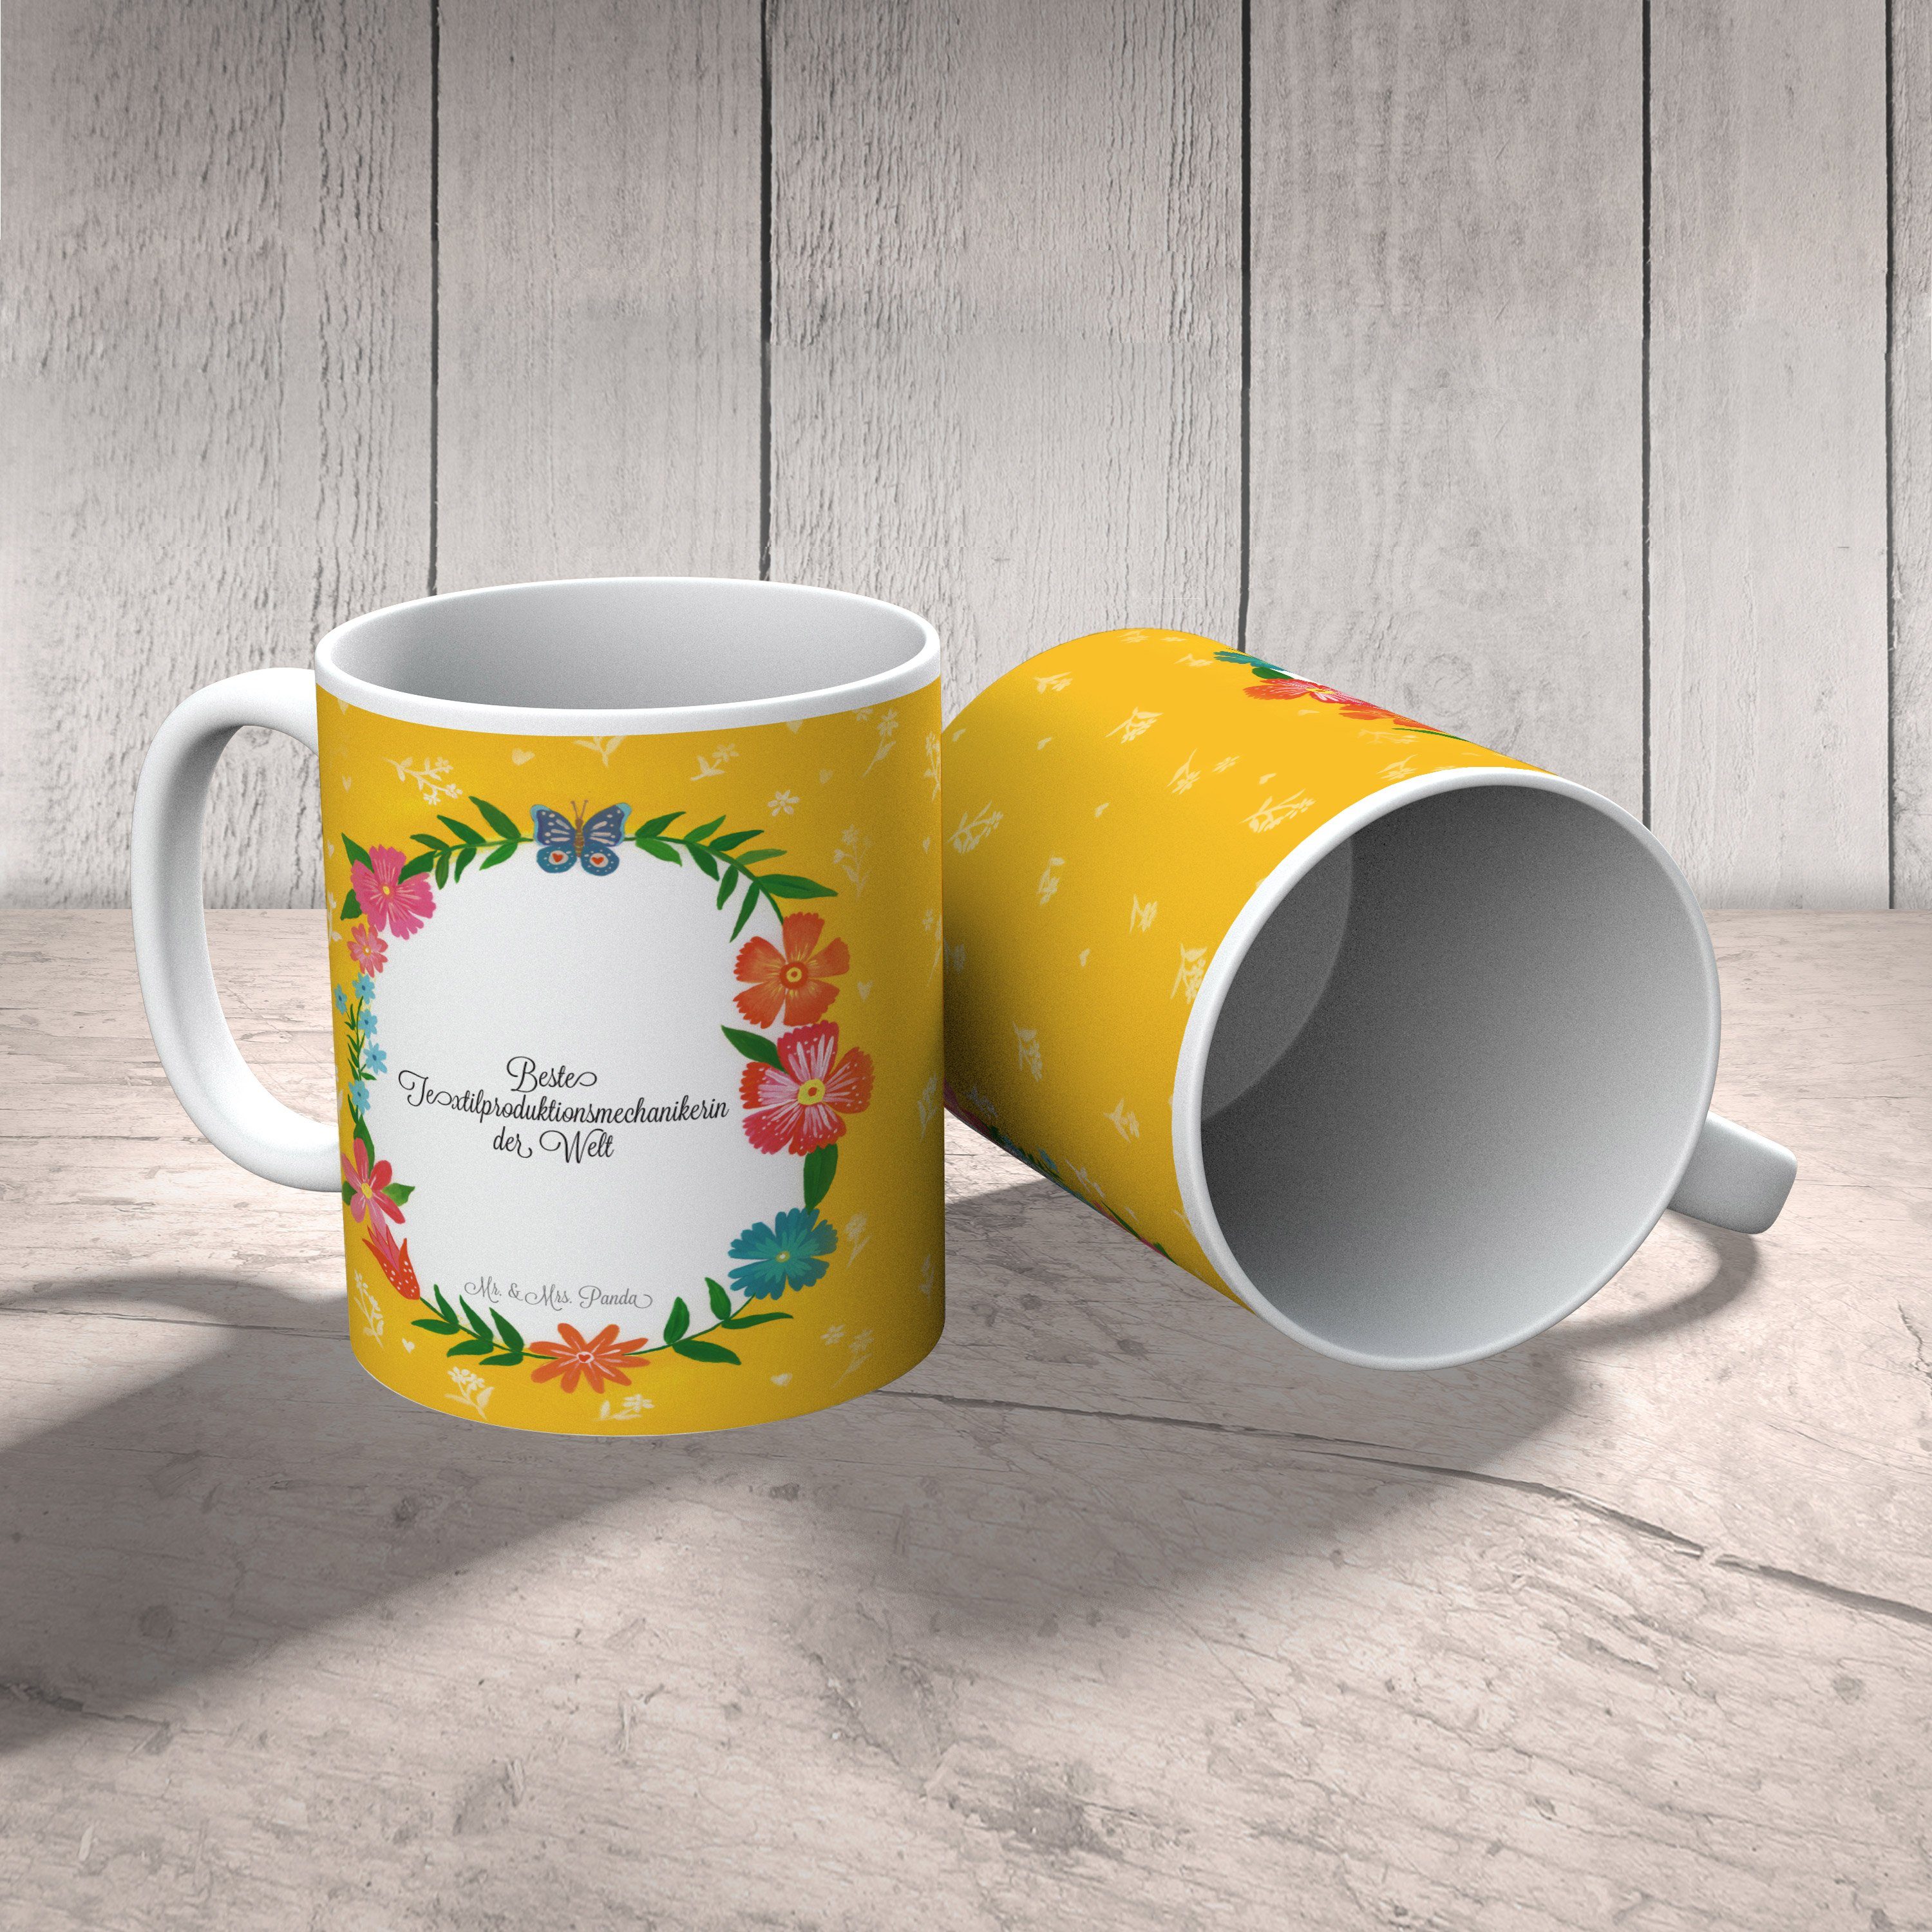 Mr. & Mrs. Panda K, Textilproduktionsmechanikerin - Kaffeetasse, Keramik Tasse Geschenk, Gratulation